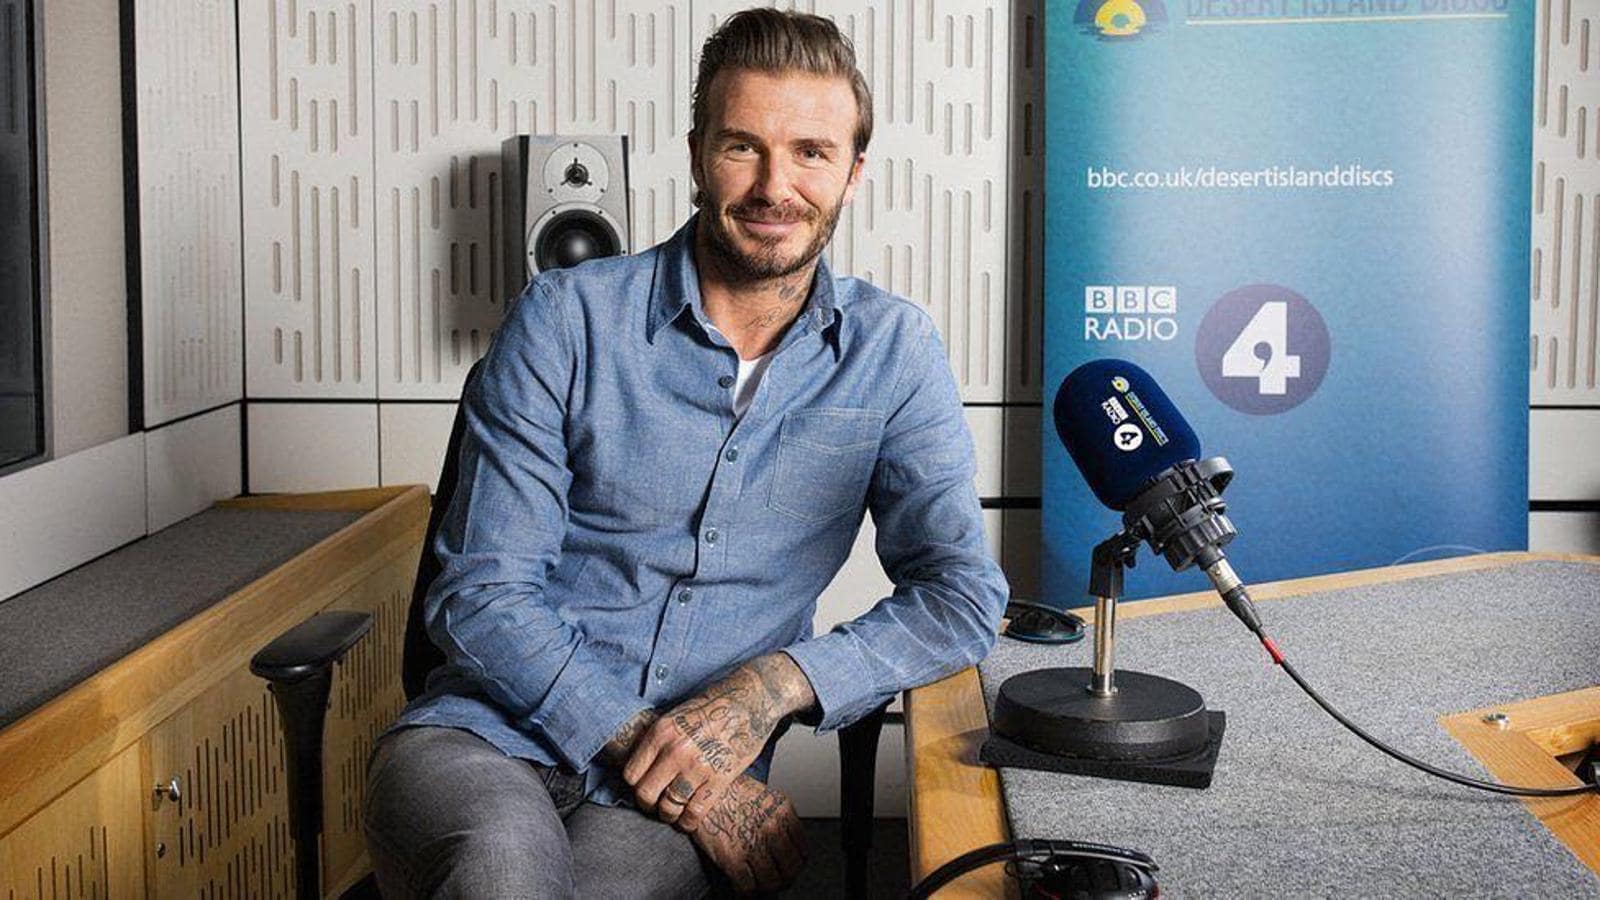 David Beckham. imposible hacer un ranking como este y no incluir al que está considerado el icono de estilo masculino por excelencia de los últimos años